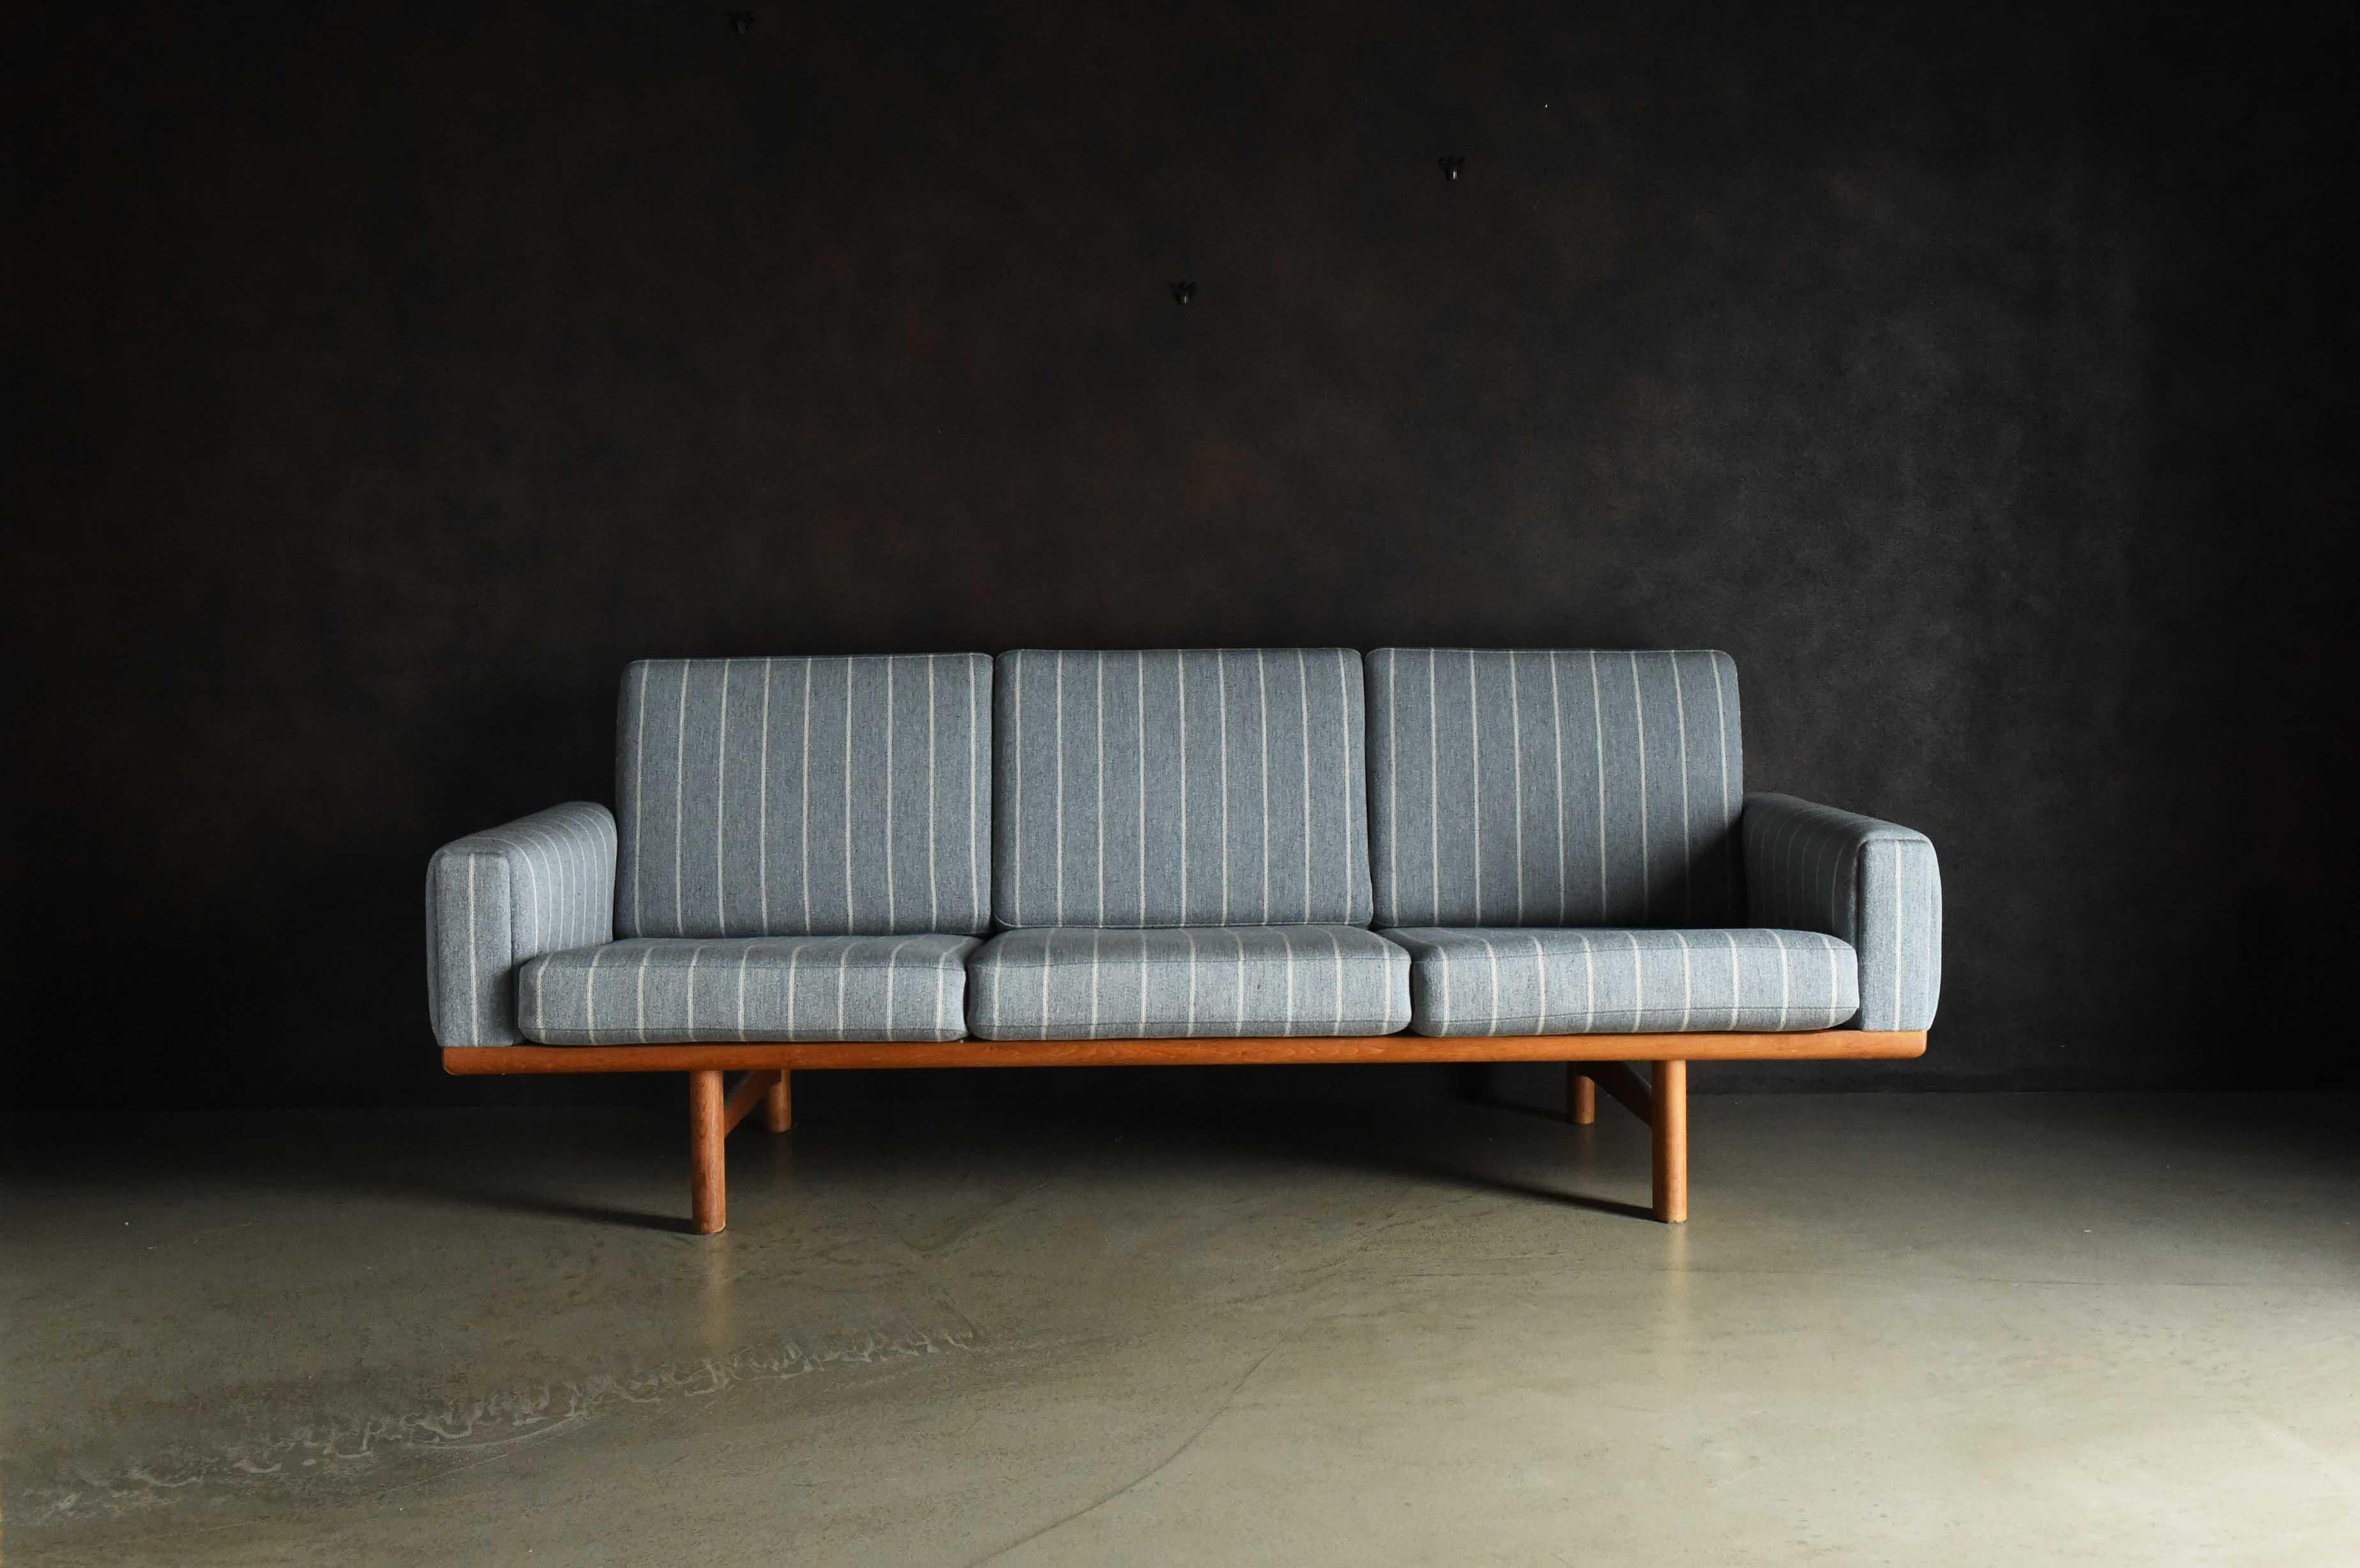 Es handelt sich um ein dreisitziges Sofa des Herstellers GETAMA. Das schlichte Design zeichnet sich durch geradlinige Linien aus, aber die abgewinkelte Sitzfläche und Rückenlehne wurden sorgfältig berechnet, um die Belastung des Körpers und des